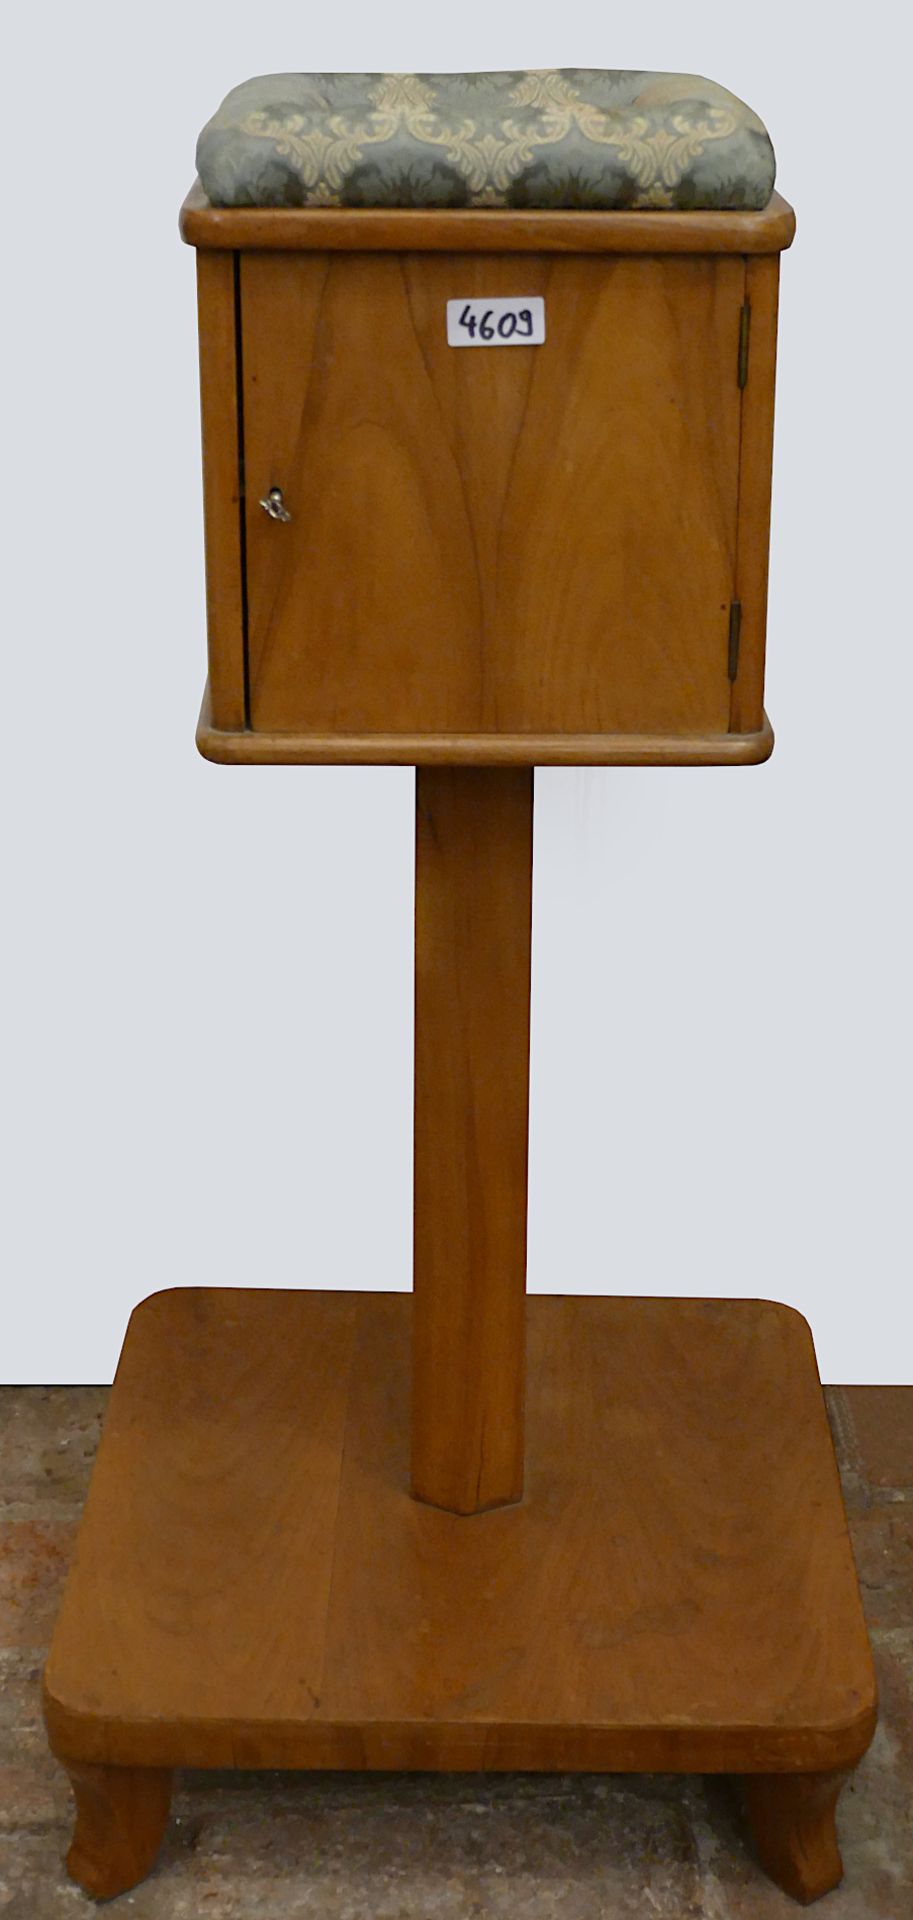 2 Kleinmöbel: 1 Nähstock wohl Spätbiedermeier Holz furniert 4 Schubladen, ca. H 82cm sowie 1 Wandspi - Image 2 of 2